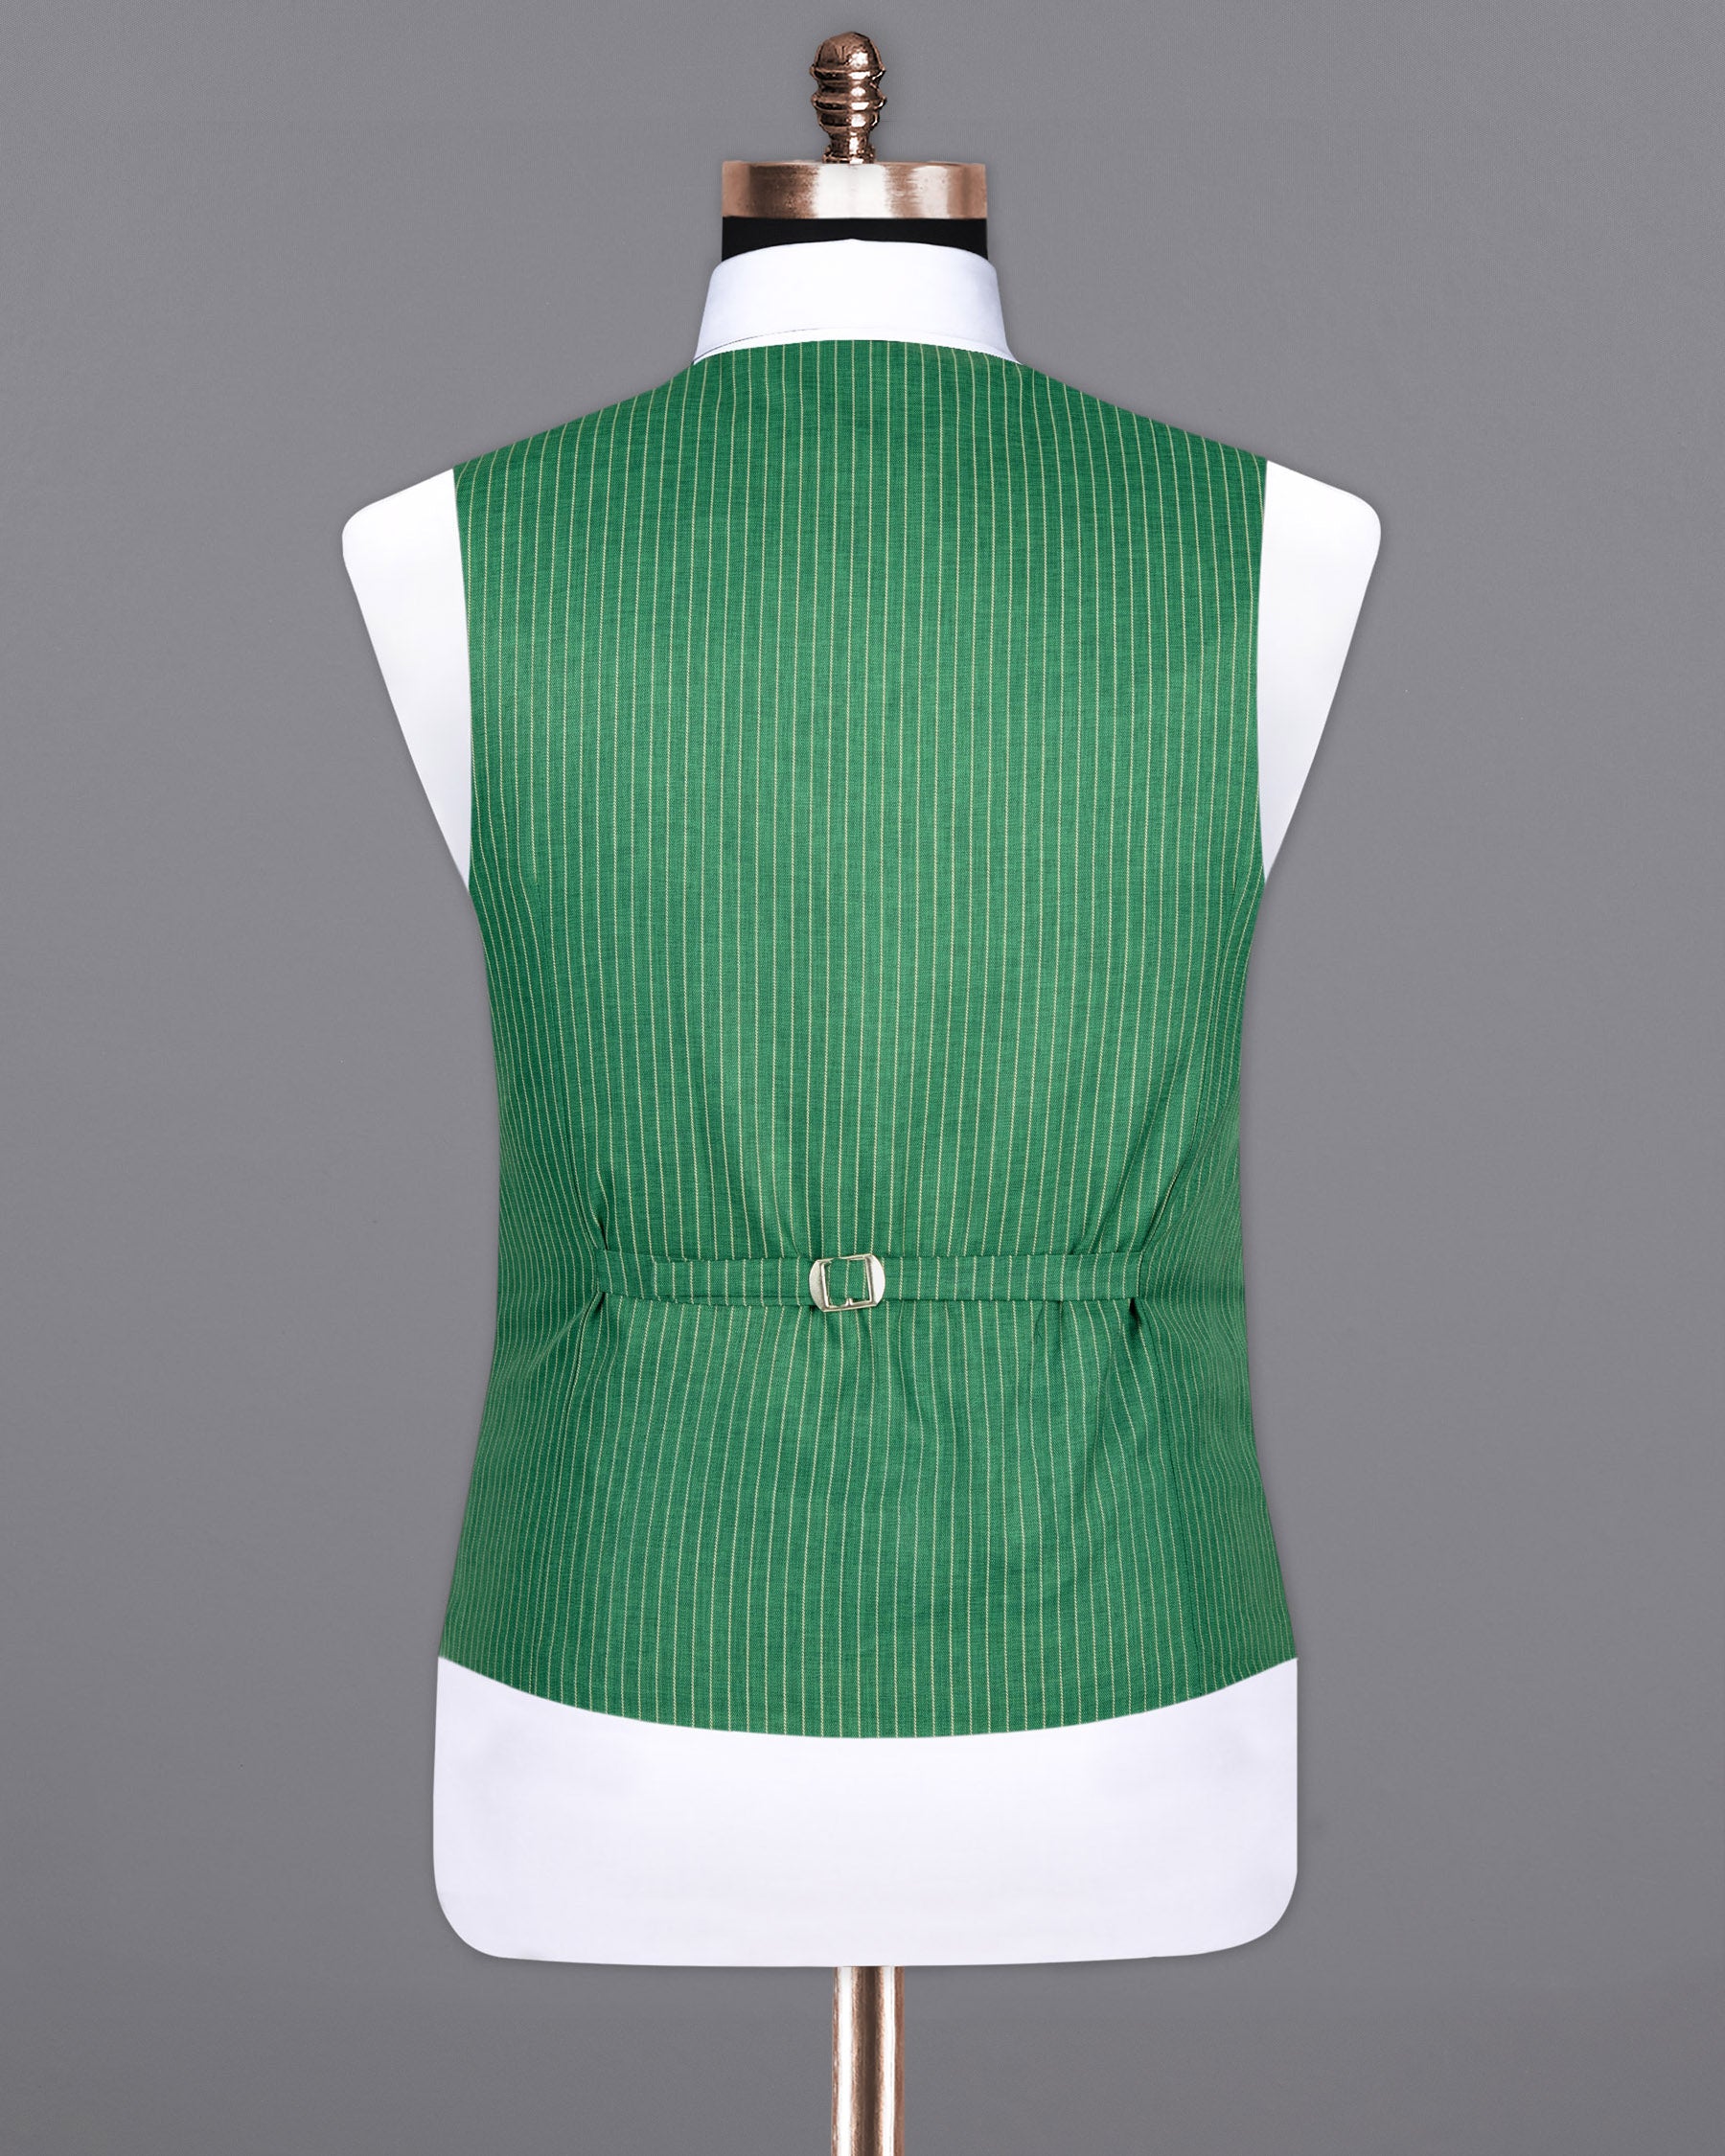 Viridian Green Striped Woolrich Waistcoat